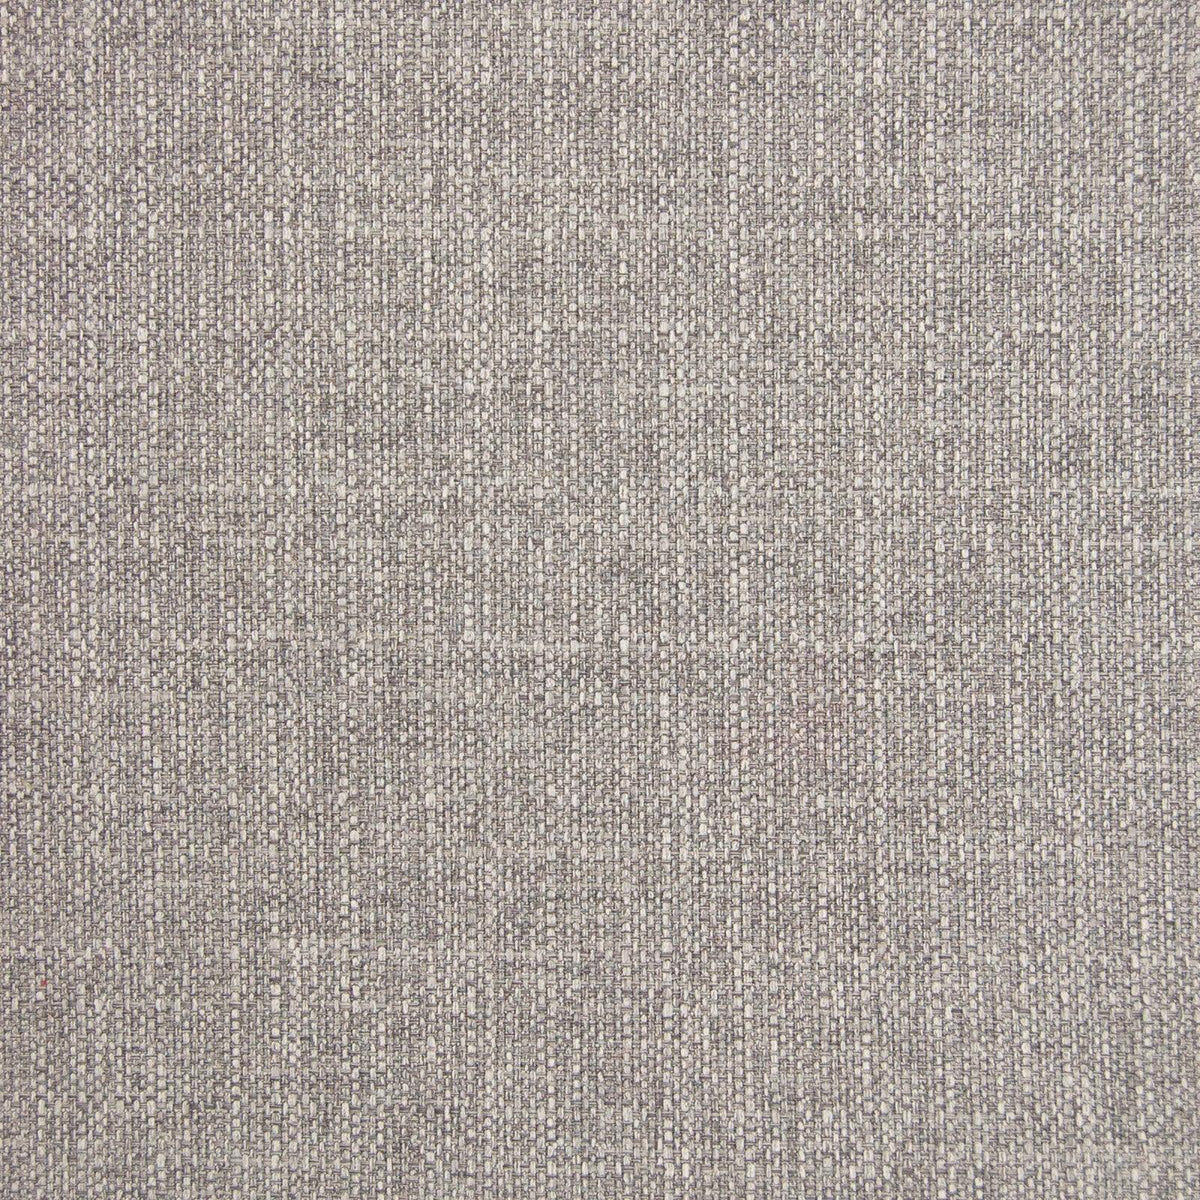 B5537 Silver Lining - Atlanta Fabrics